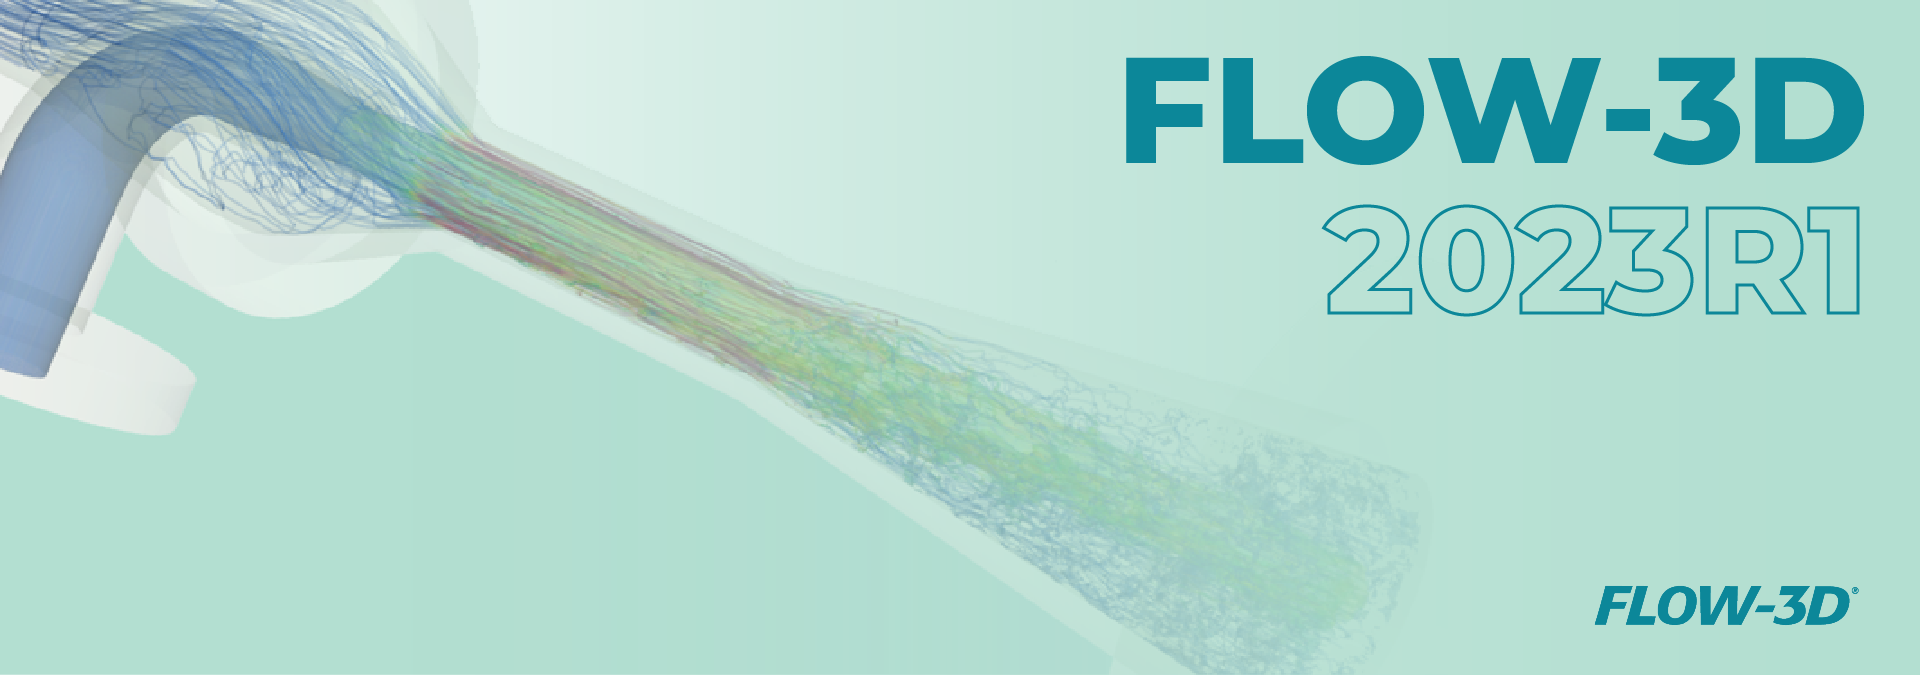 flow-3d-2023r1